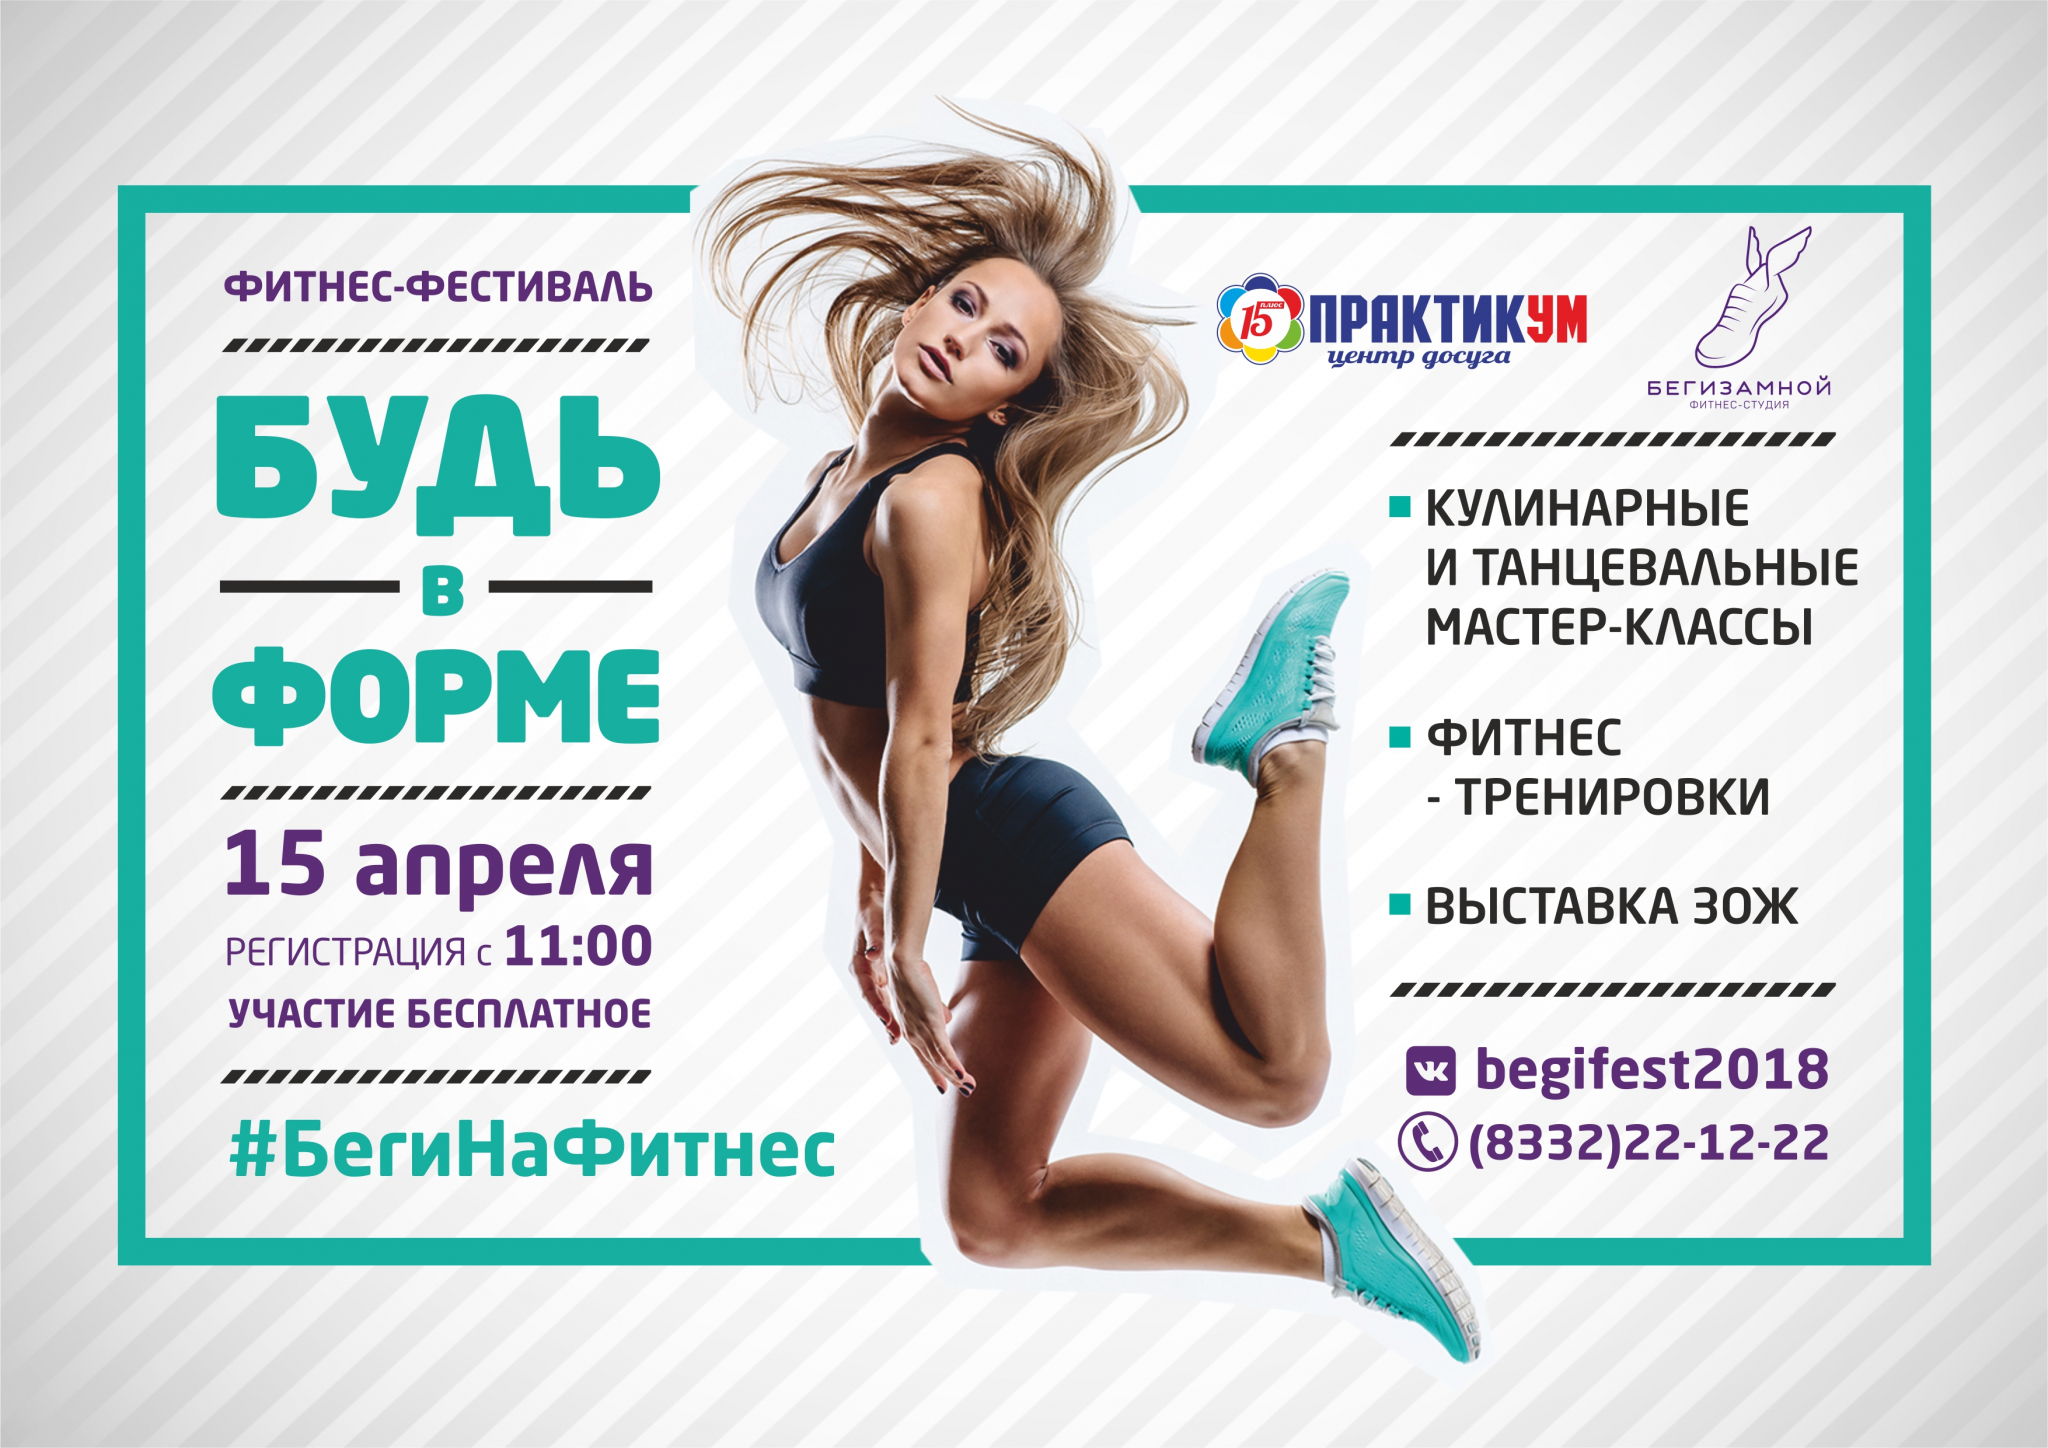 Фитнес-фестиваль "БУДЬ В ФОРМЕ" 